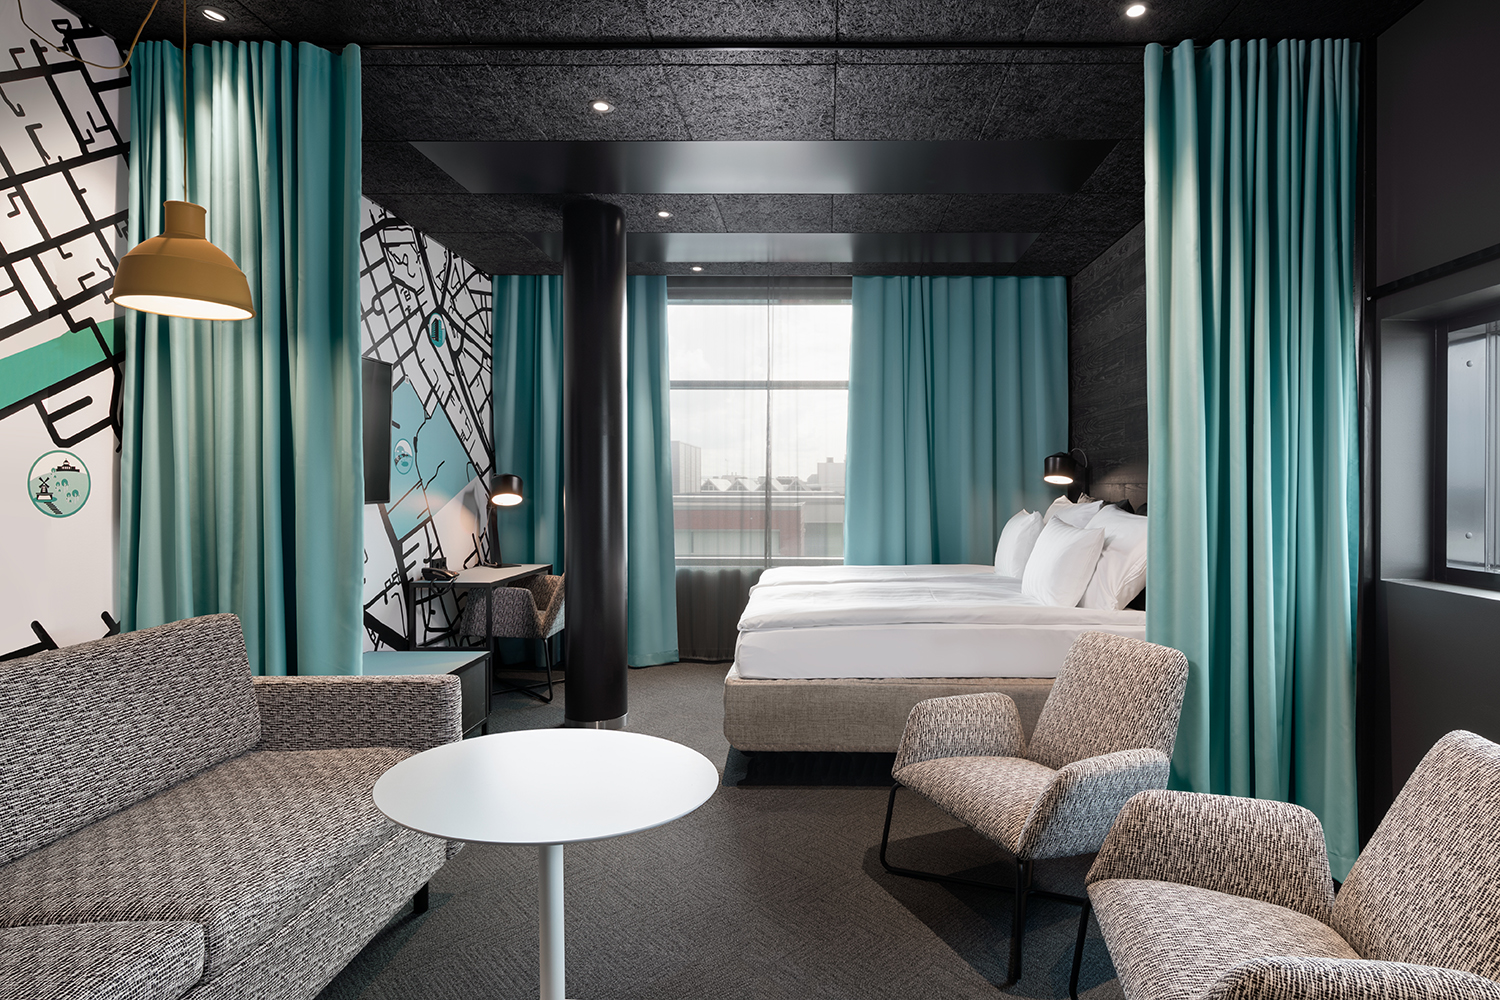 Sokos Hotel Kupittaan hotellihuone, jossa on turkoosit verhot, harmaa sohva ja kaksi nojatuolia sekä sänky. Seinillä on sisustustapetit.